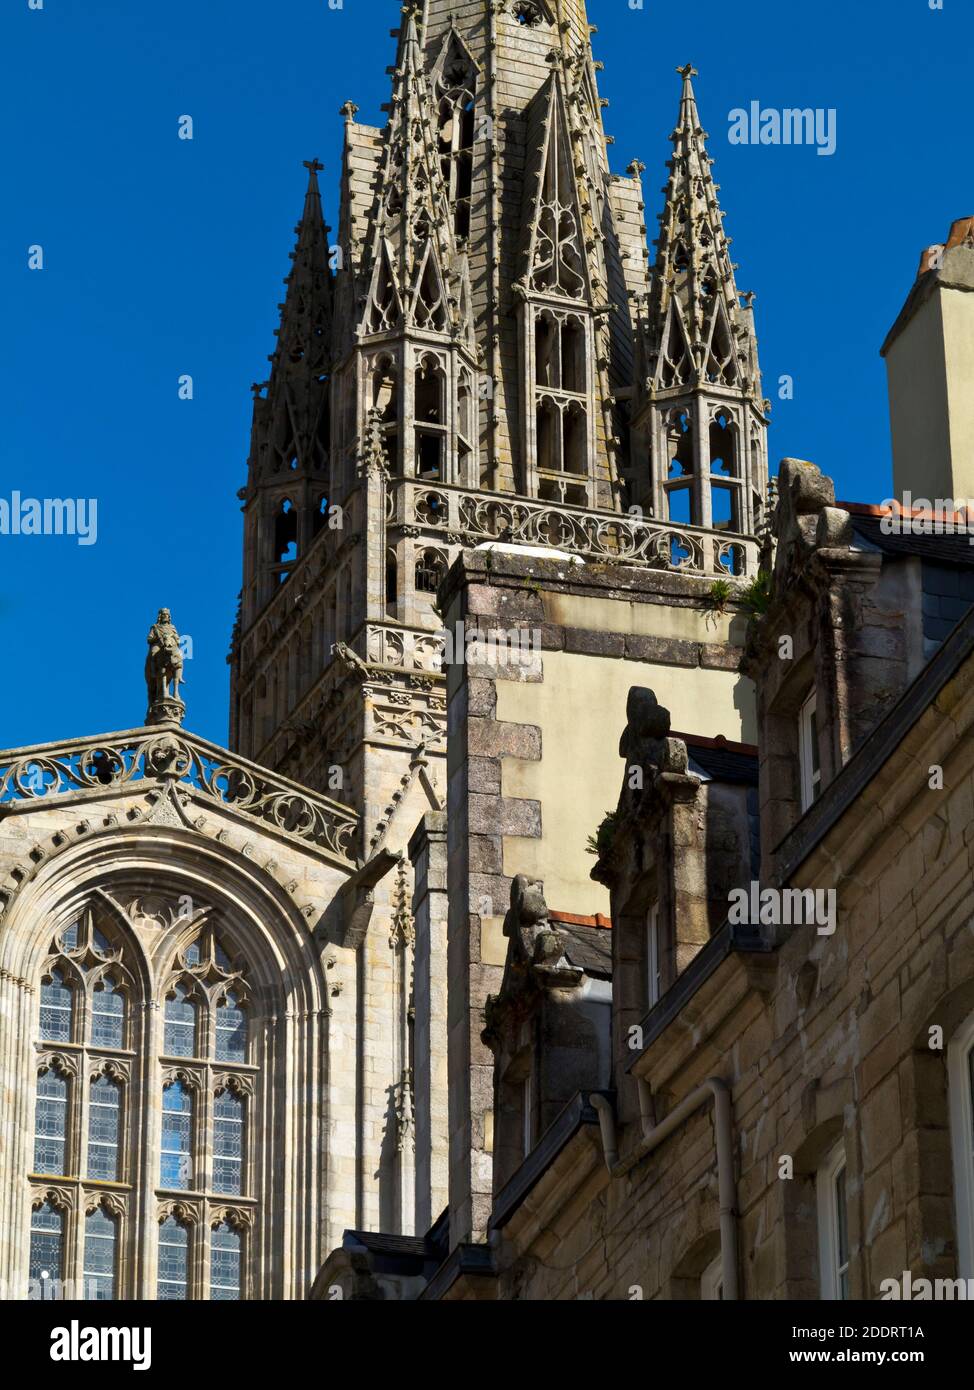 Historische Gebäude in der Altstadt in der Nähe der Kathedrale St. Corentin in Quimper, der Hauptstadt von Finisterre in der Bretagne im Nordwesten Frankreichs. Stockfoto